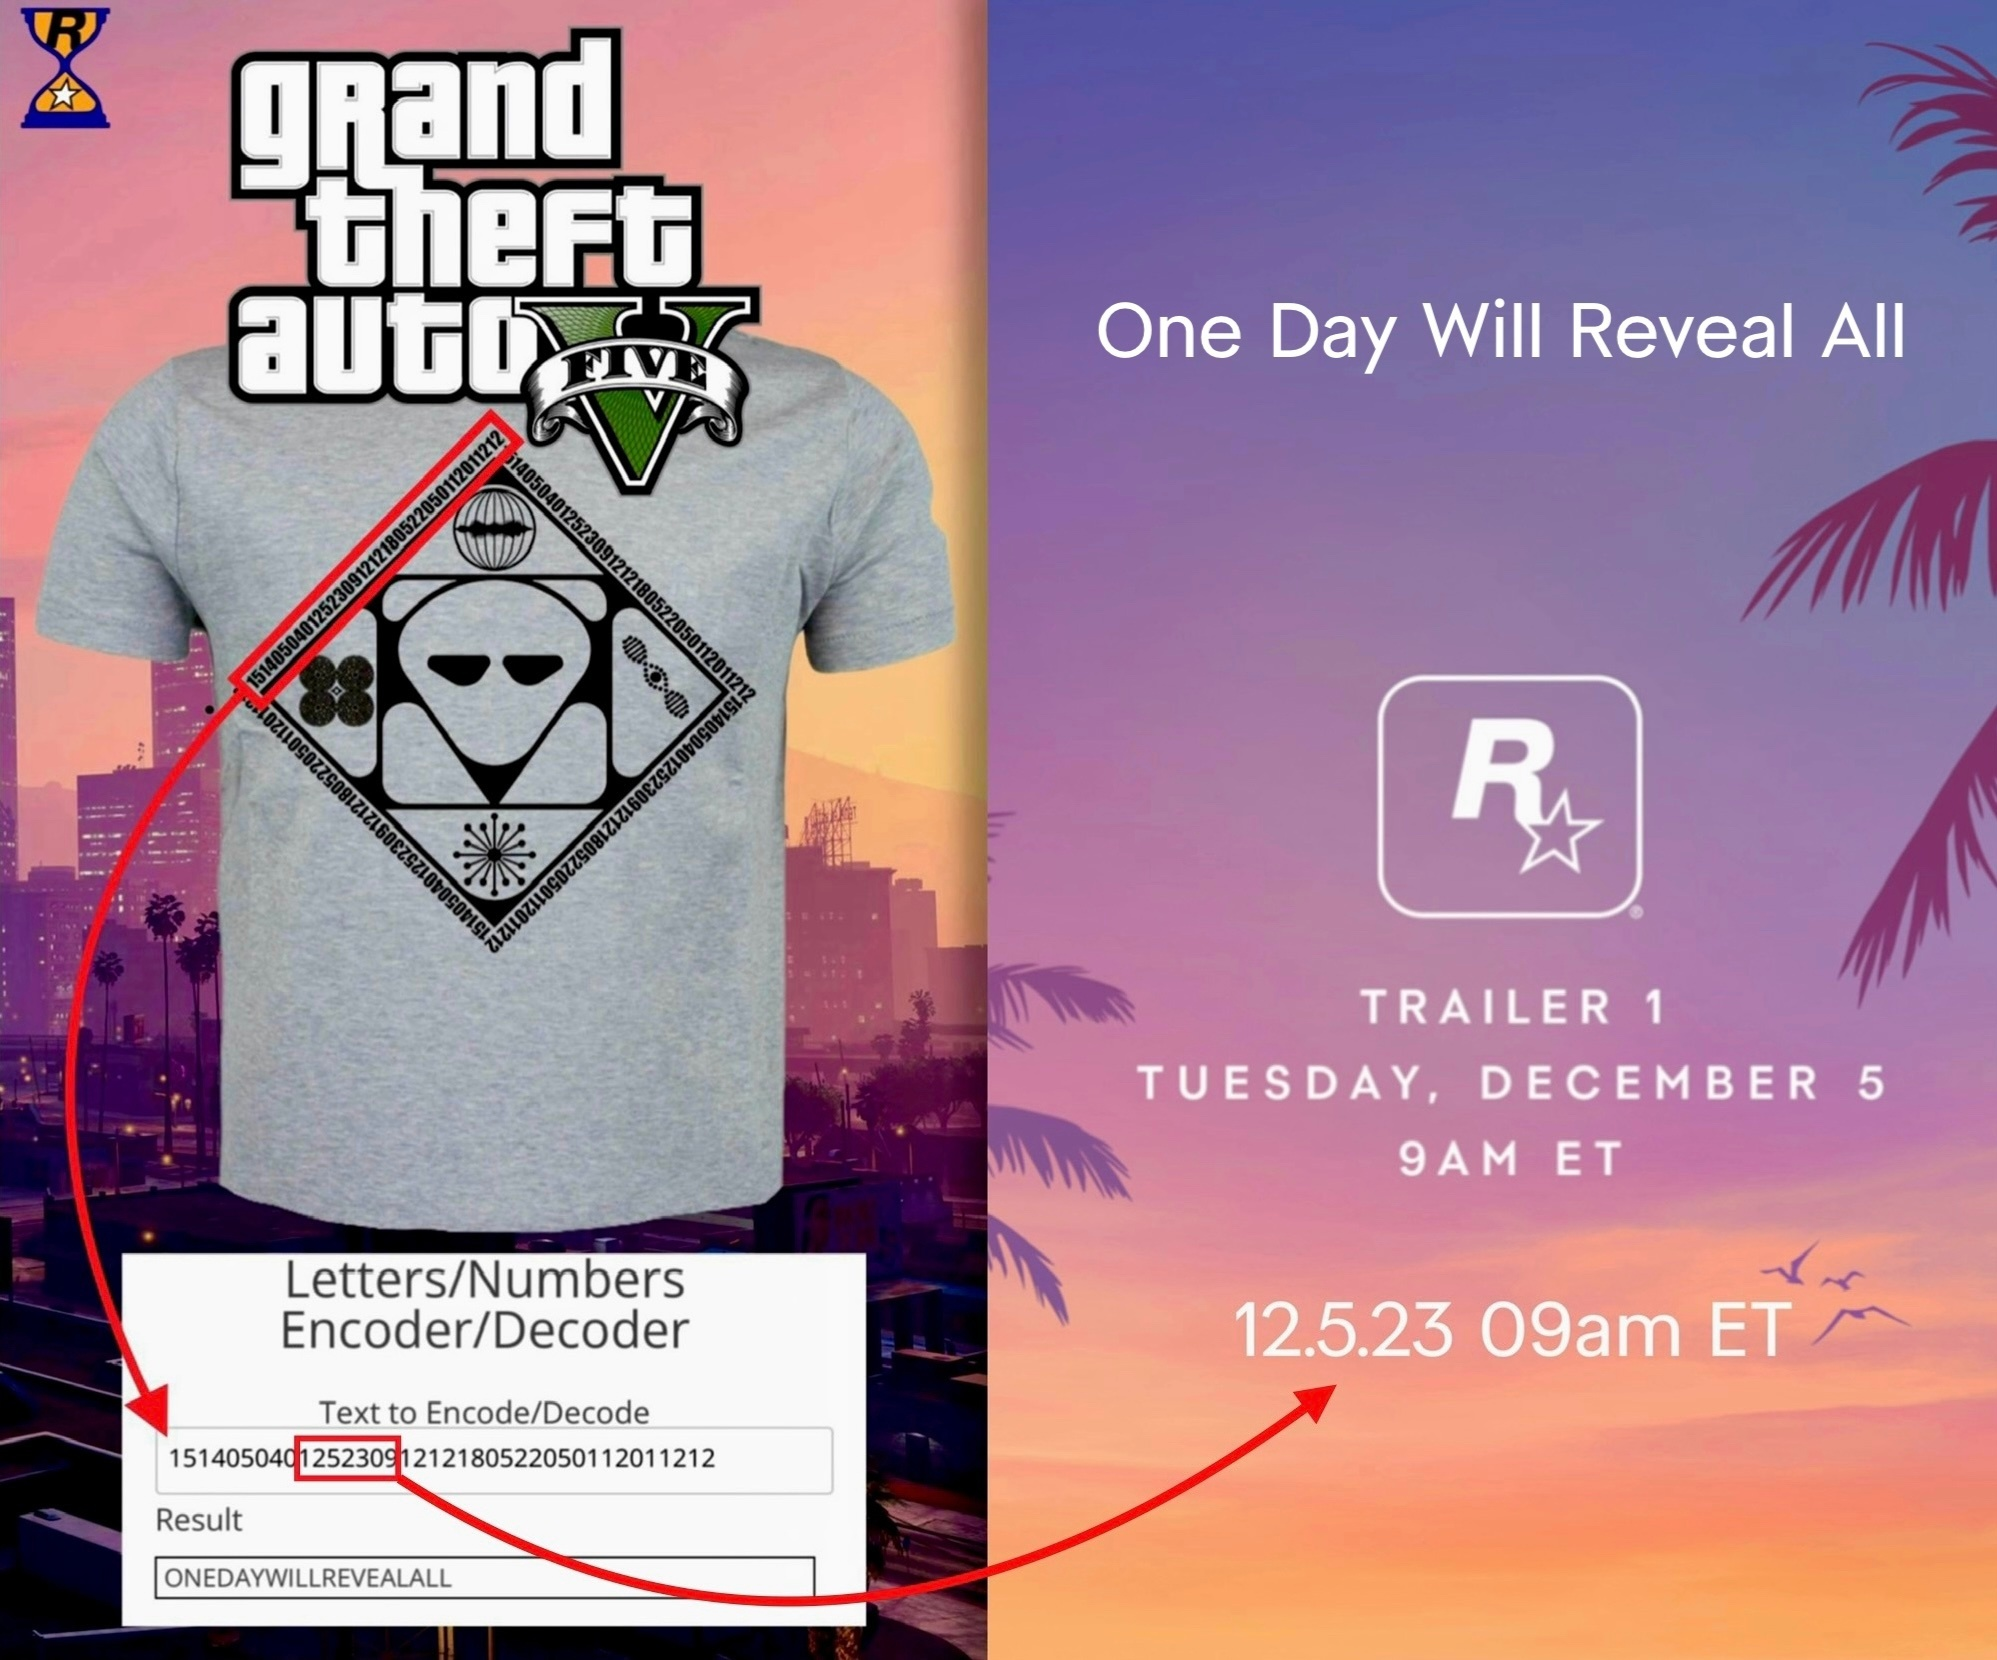 Дата показа трейлера GTA 6 была обнаружена несколько месяцев назад в GTA Online